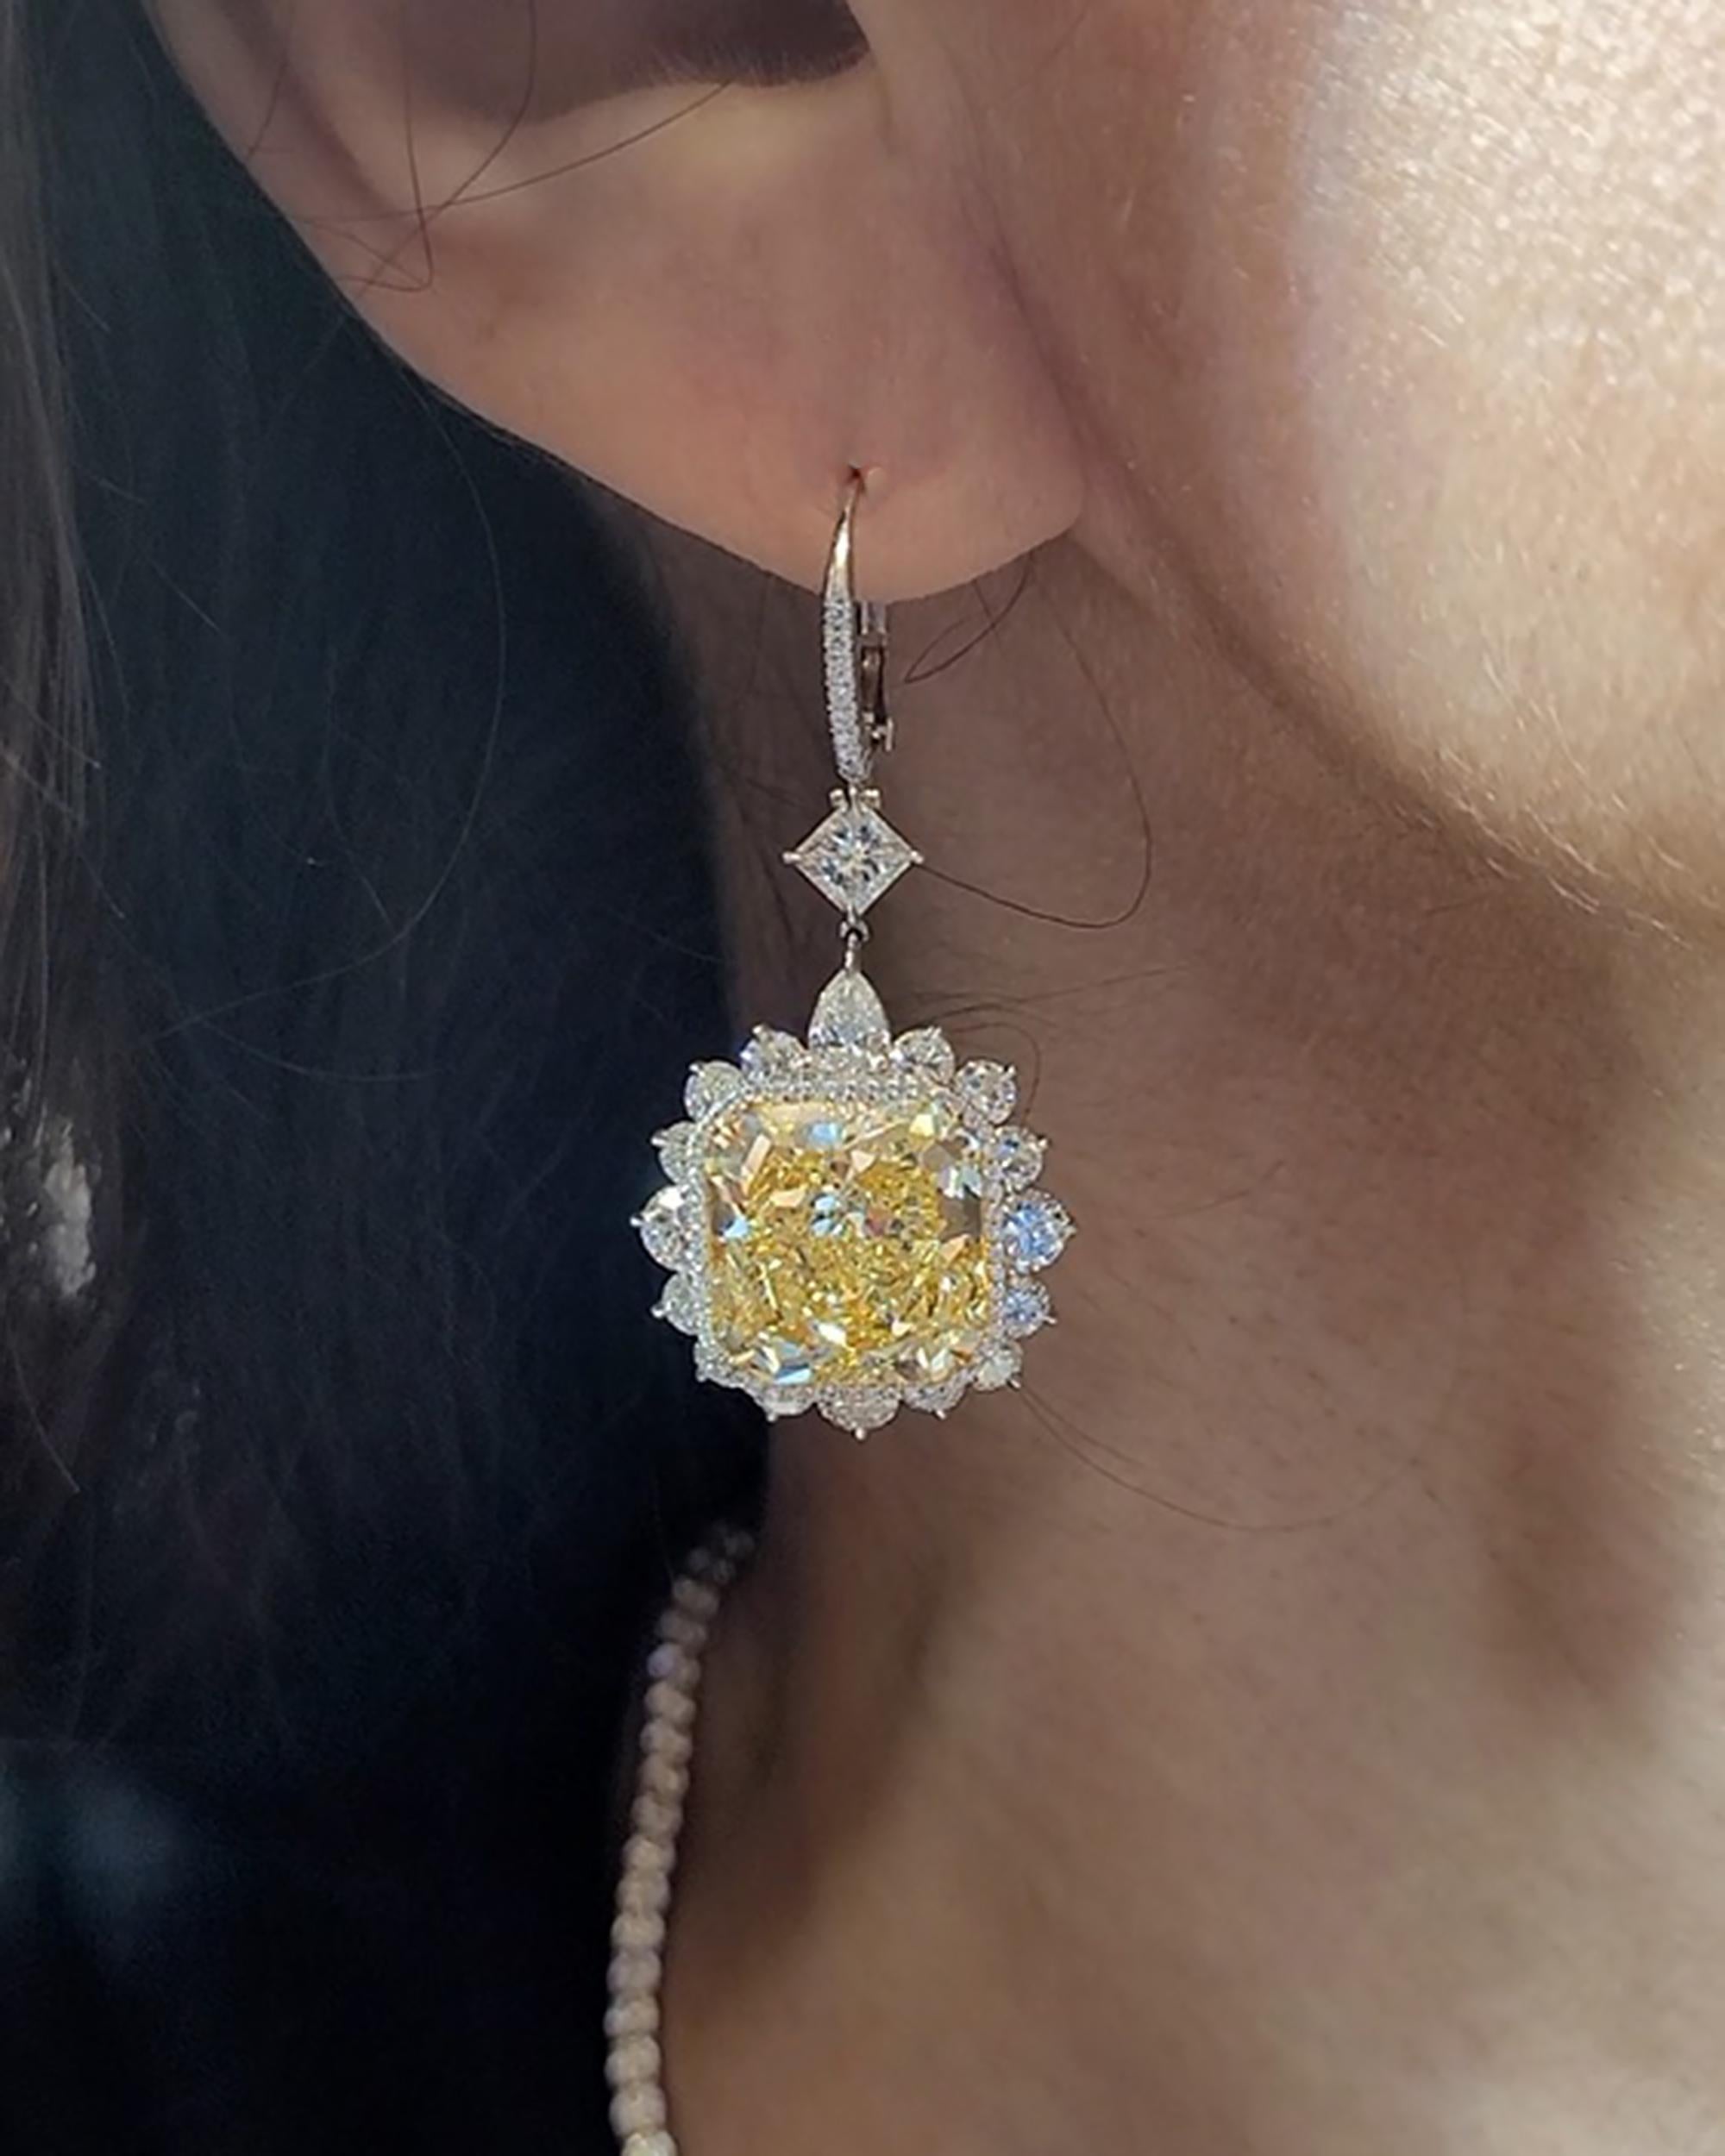 Ein Paar bedeutender Ohrringe mit zwei strahlenden gelben Fancy-Diamanten in der Mitte - 10,16 Karat und 10,61 Karat.
Die gelben Diamanten sind von GIA zertifiziert und haben eine Reinheit von VVS2.
Die Mittelsteine sind von 34 Diamanten im